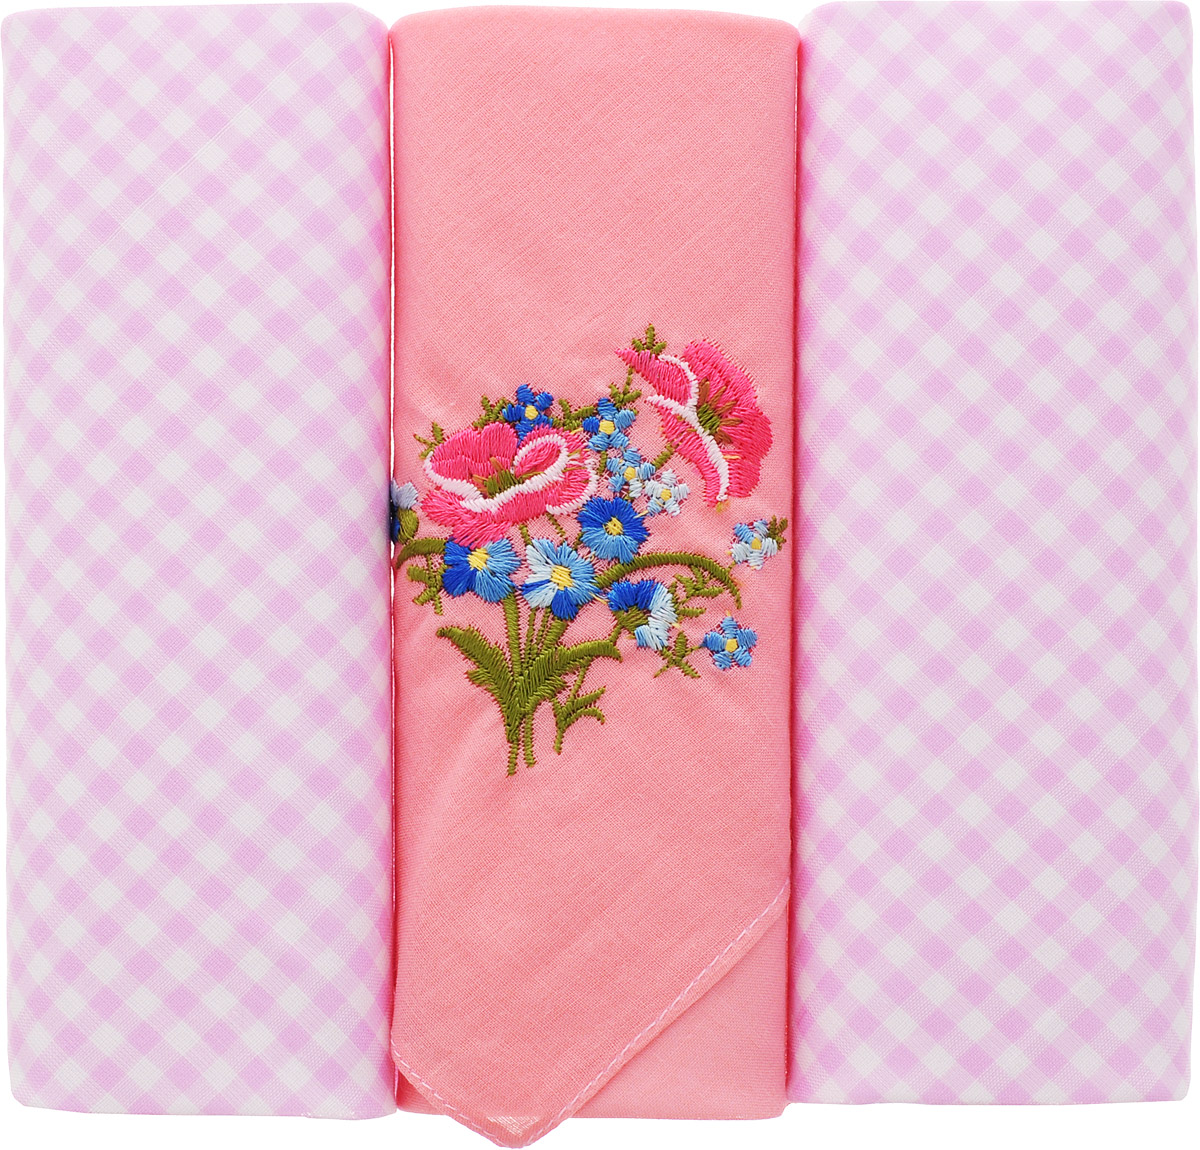 Платок носовой женский Zlata Korunka, цвет: розовый, 3 шт. 90330-12. Размер 29 см х 29 см